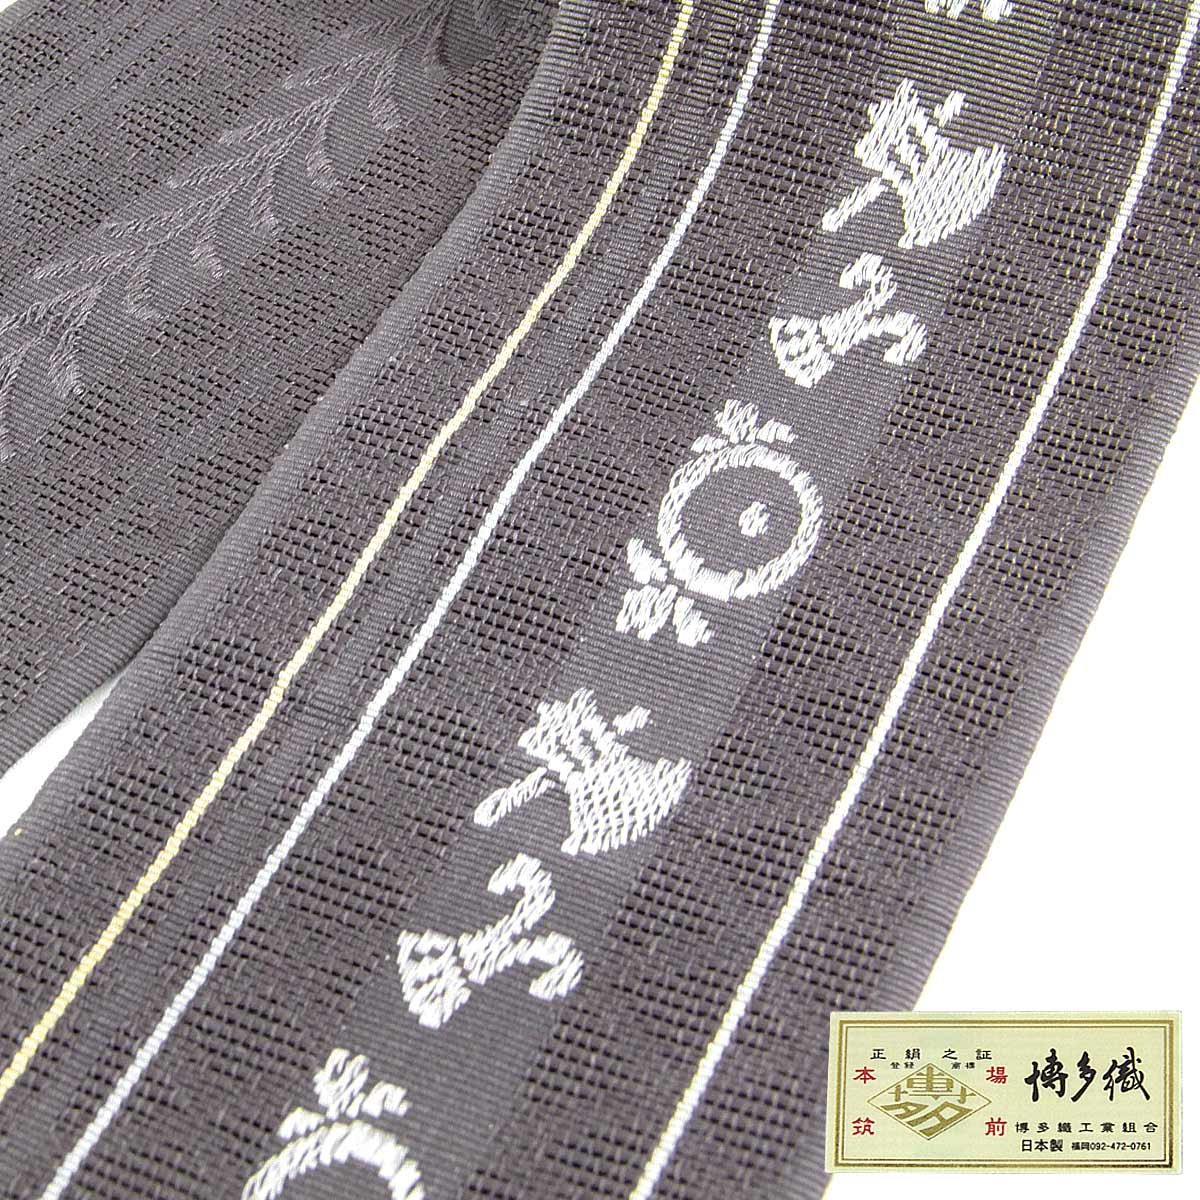 紗角帯 夏用 本袋帯 -28- 正絹 博多織 絹100% 斧琴菊紋様